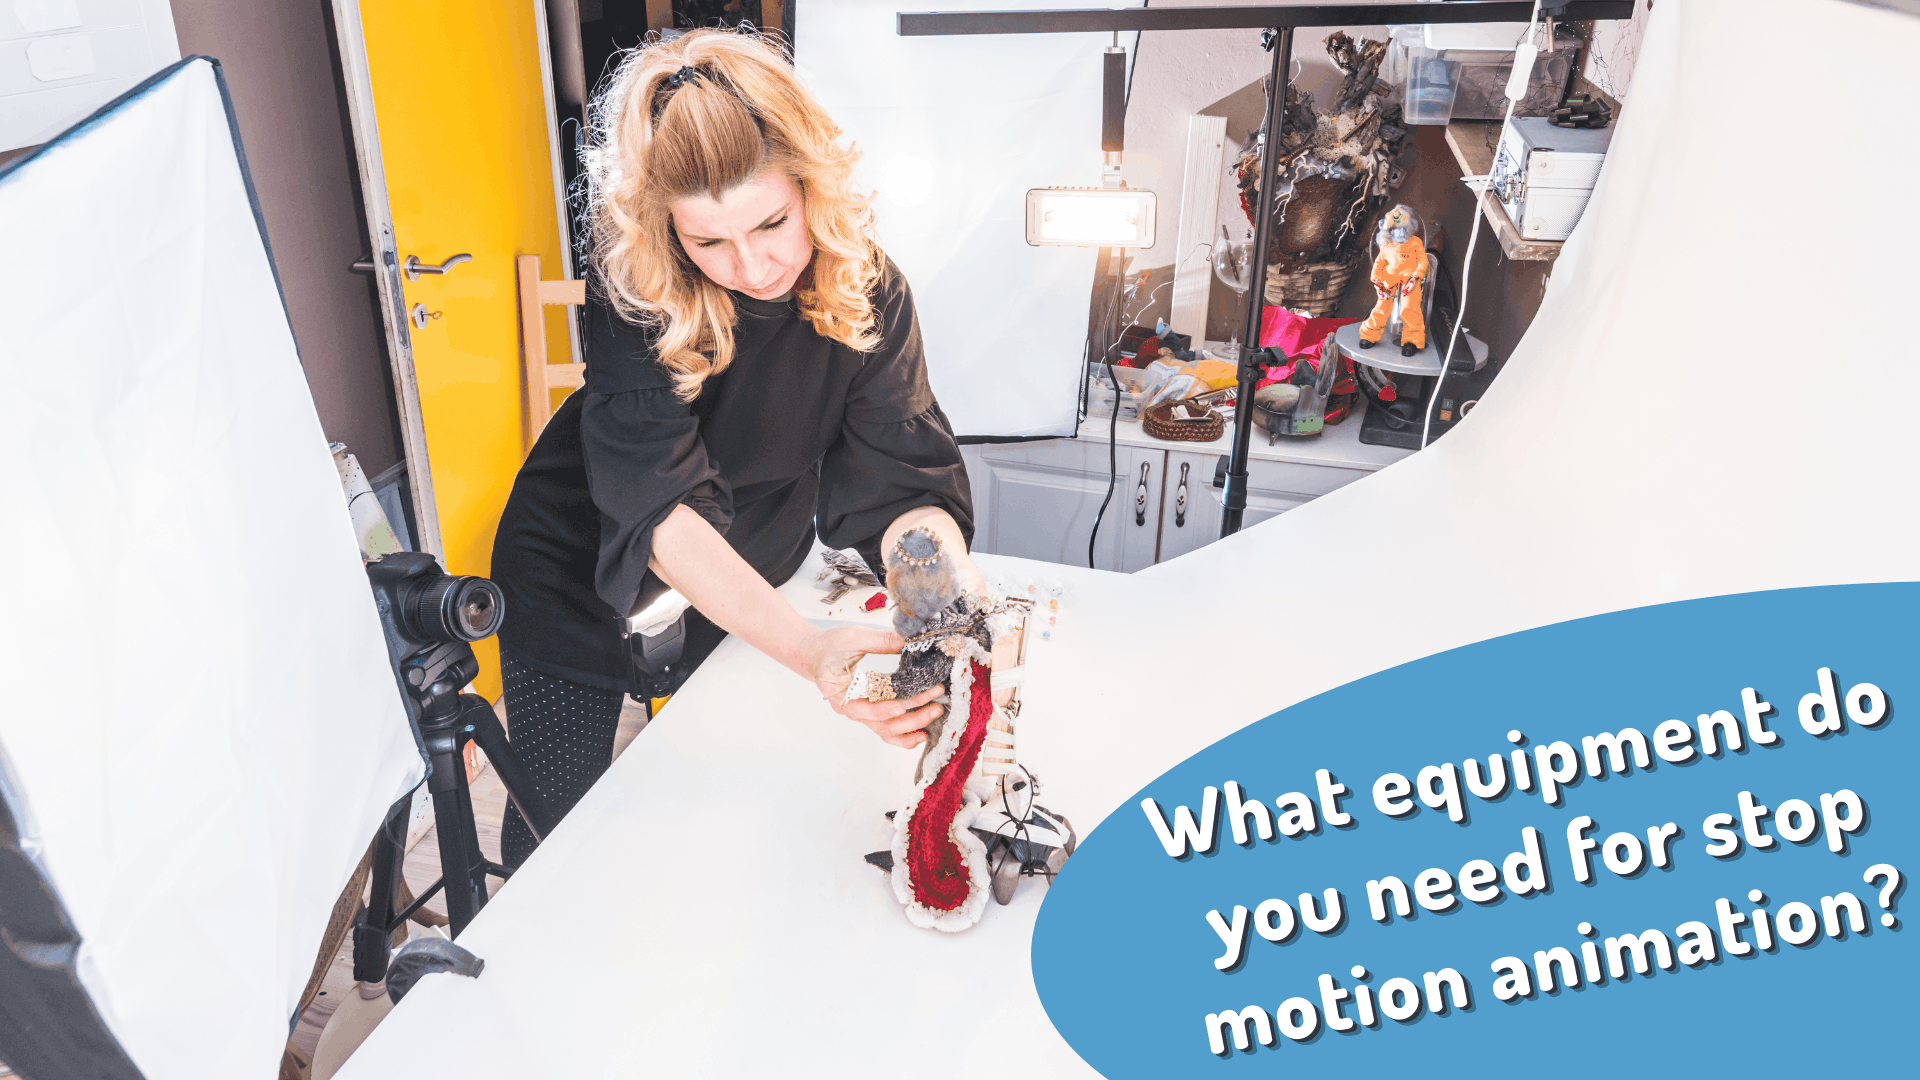 Welke apparatuur heb je nodig voor stop motion animatie?